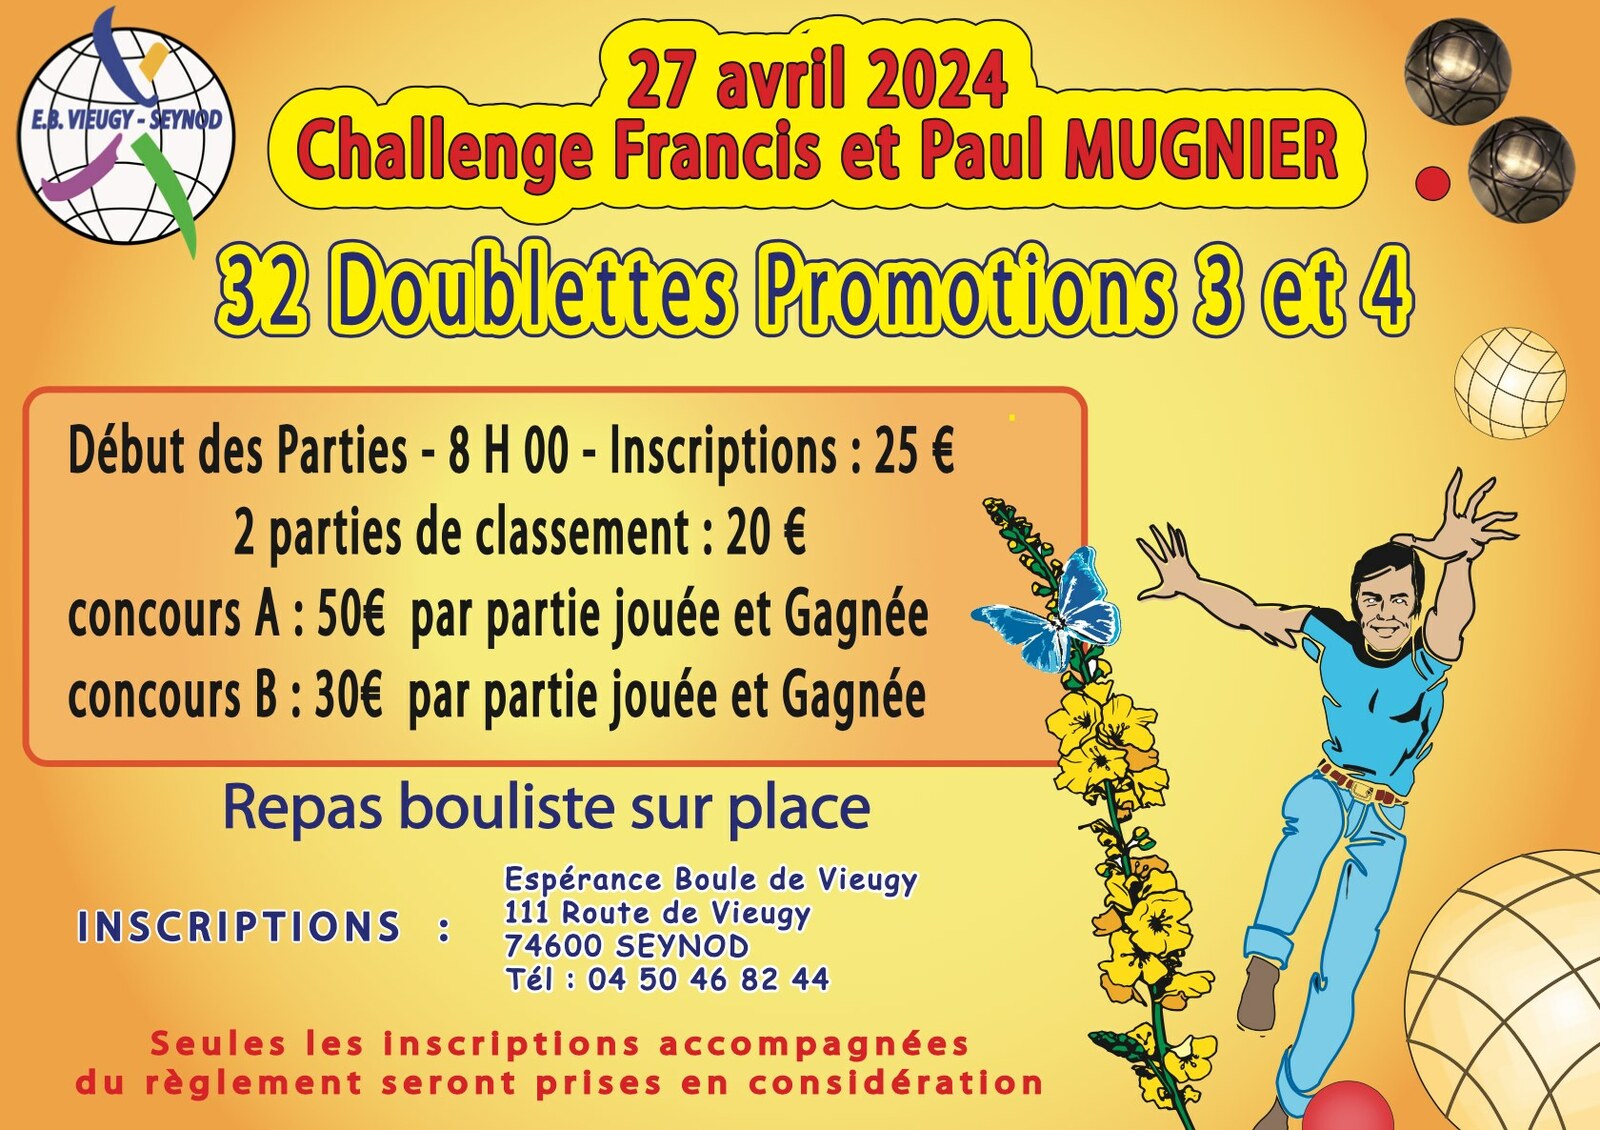 Challenge Francis et Paul MUGNIER le 27 avril 2024